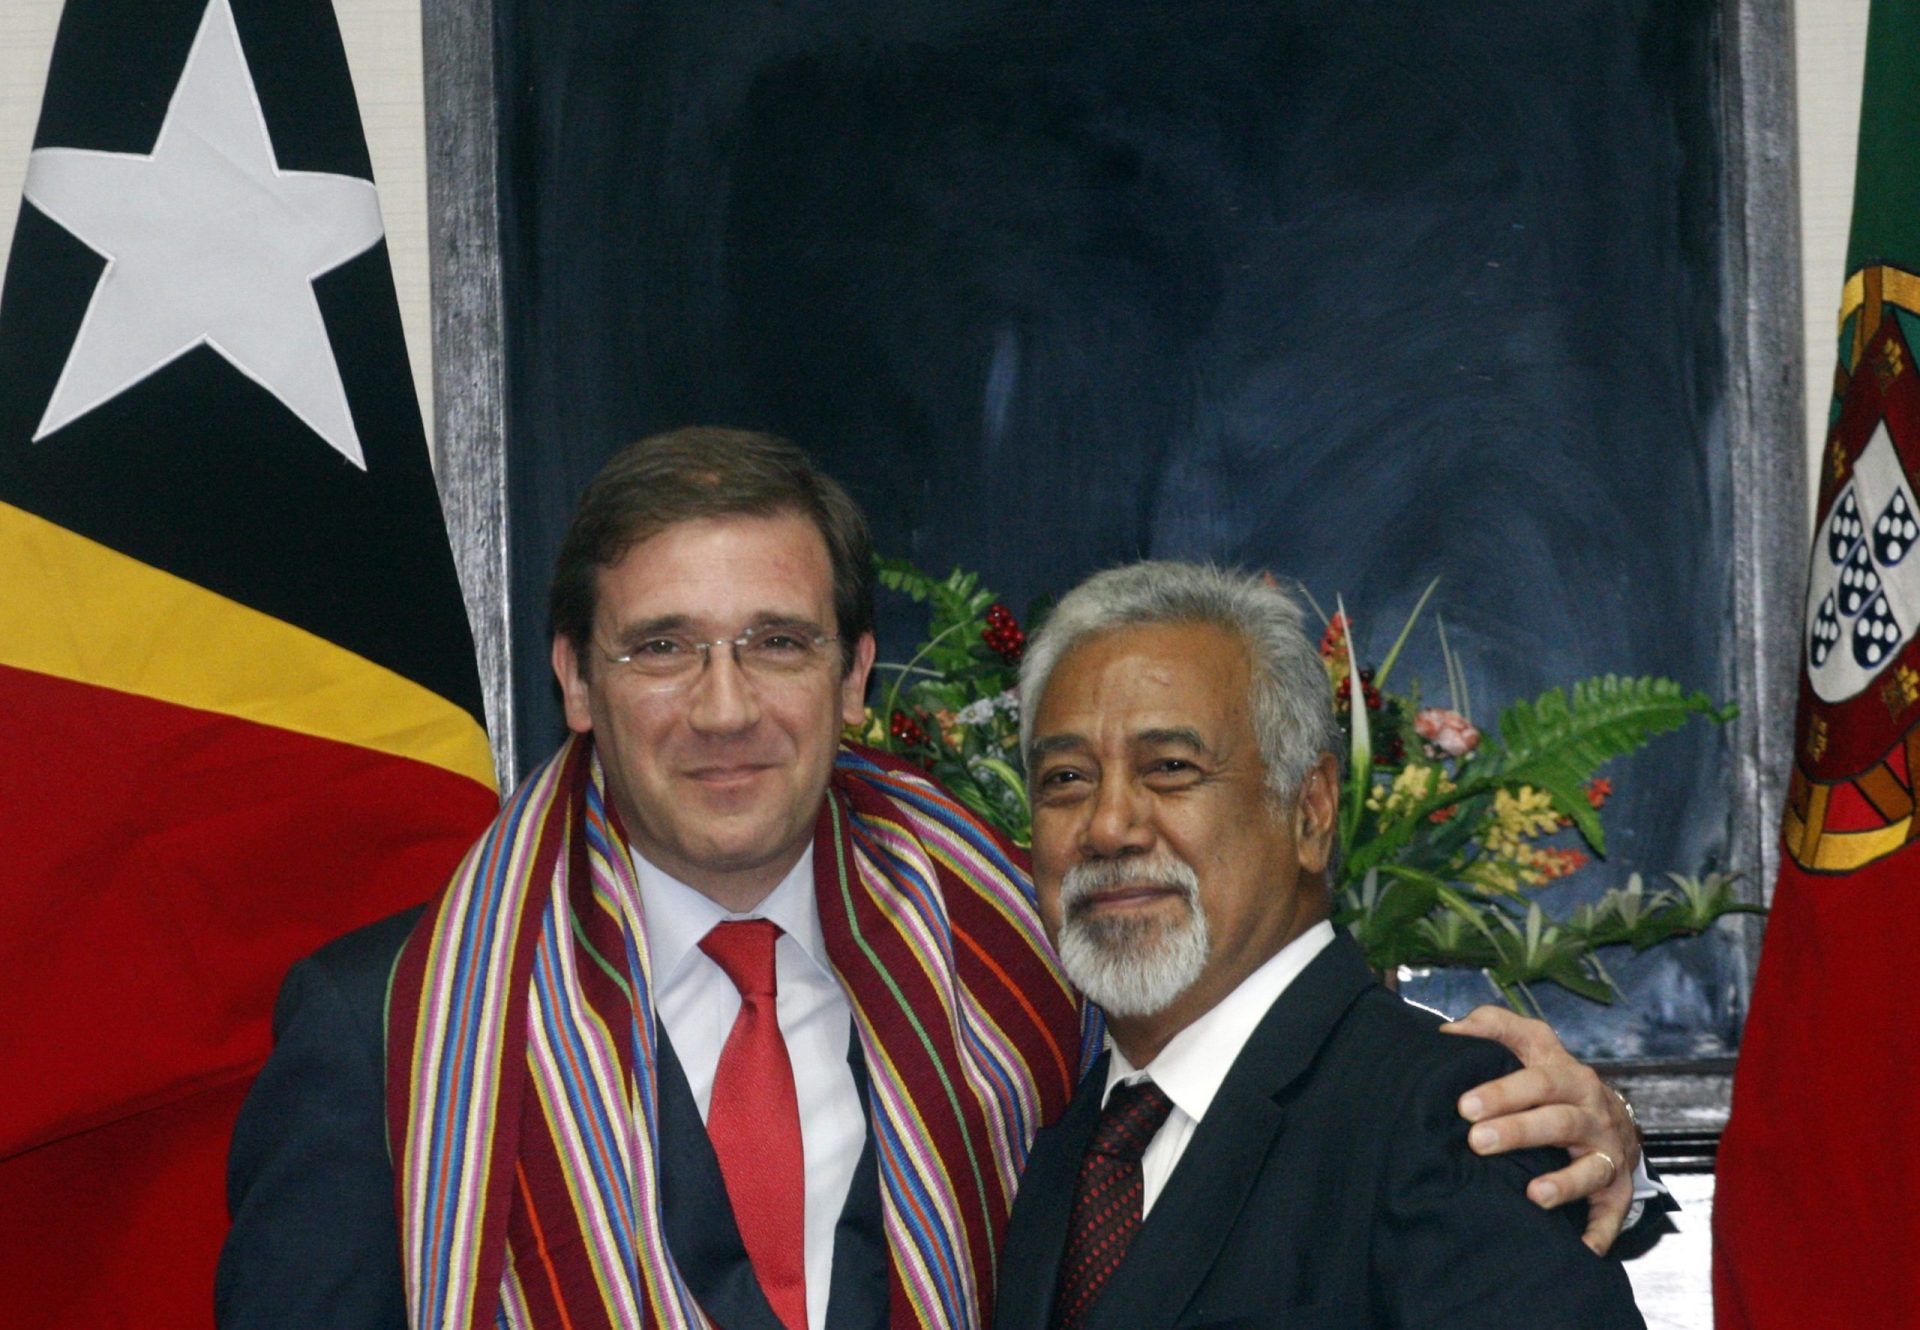 O que levou à crise entre Portugal e Timor